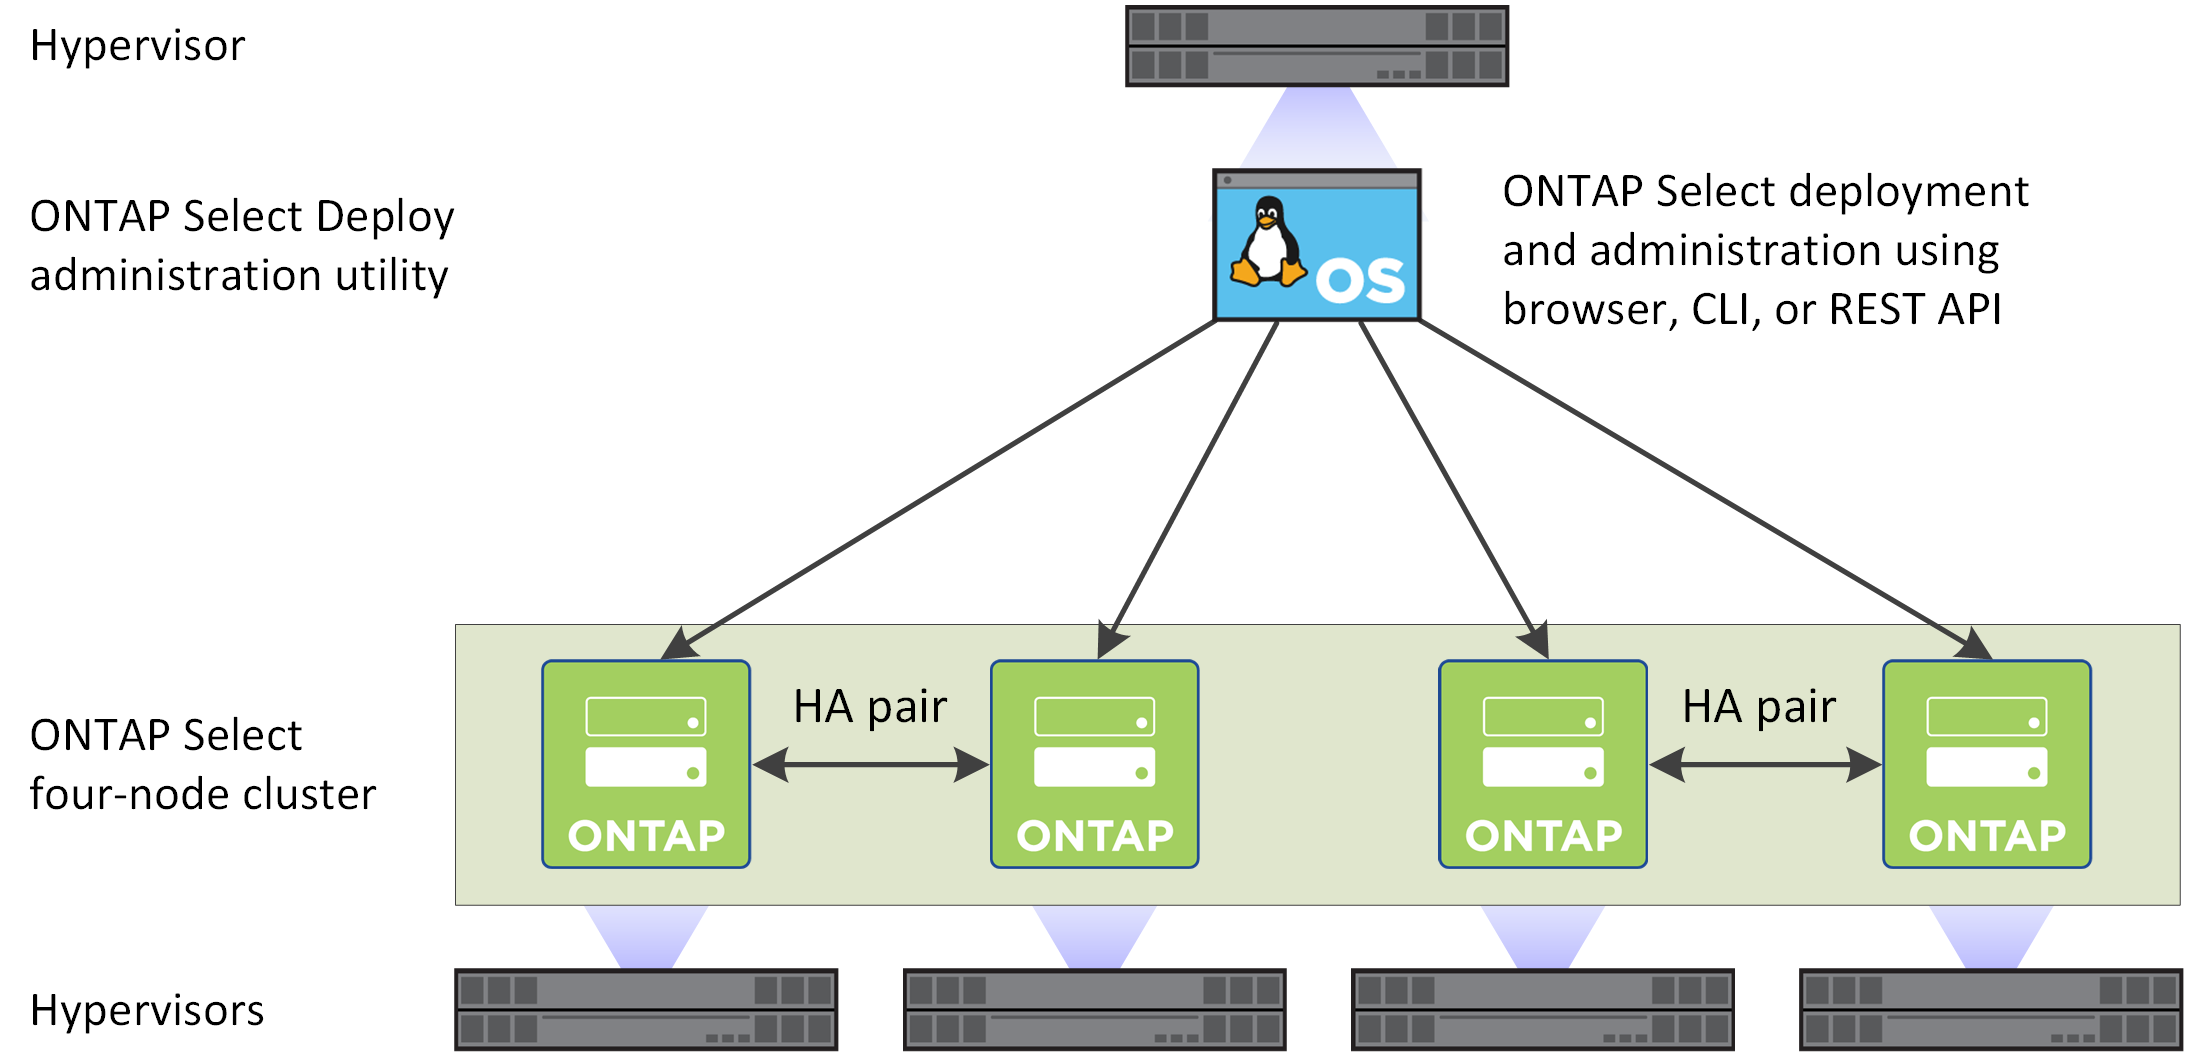 は、 Deploy 管理ユーティリティで作成された ONTAP Select 4 ノードクラスタを示しています。